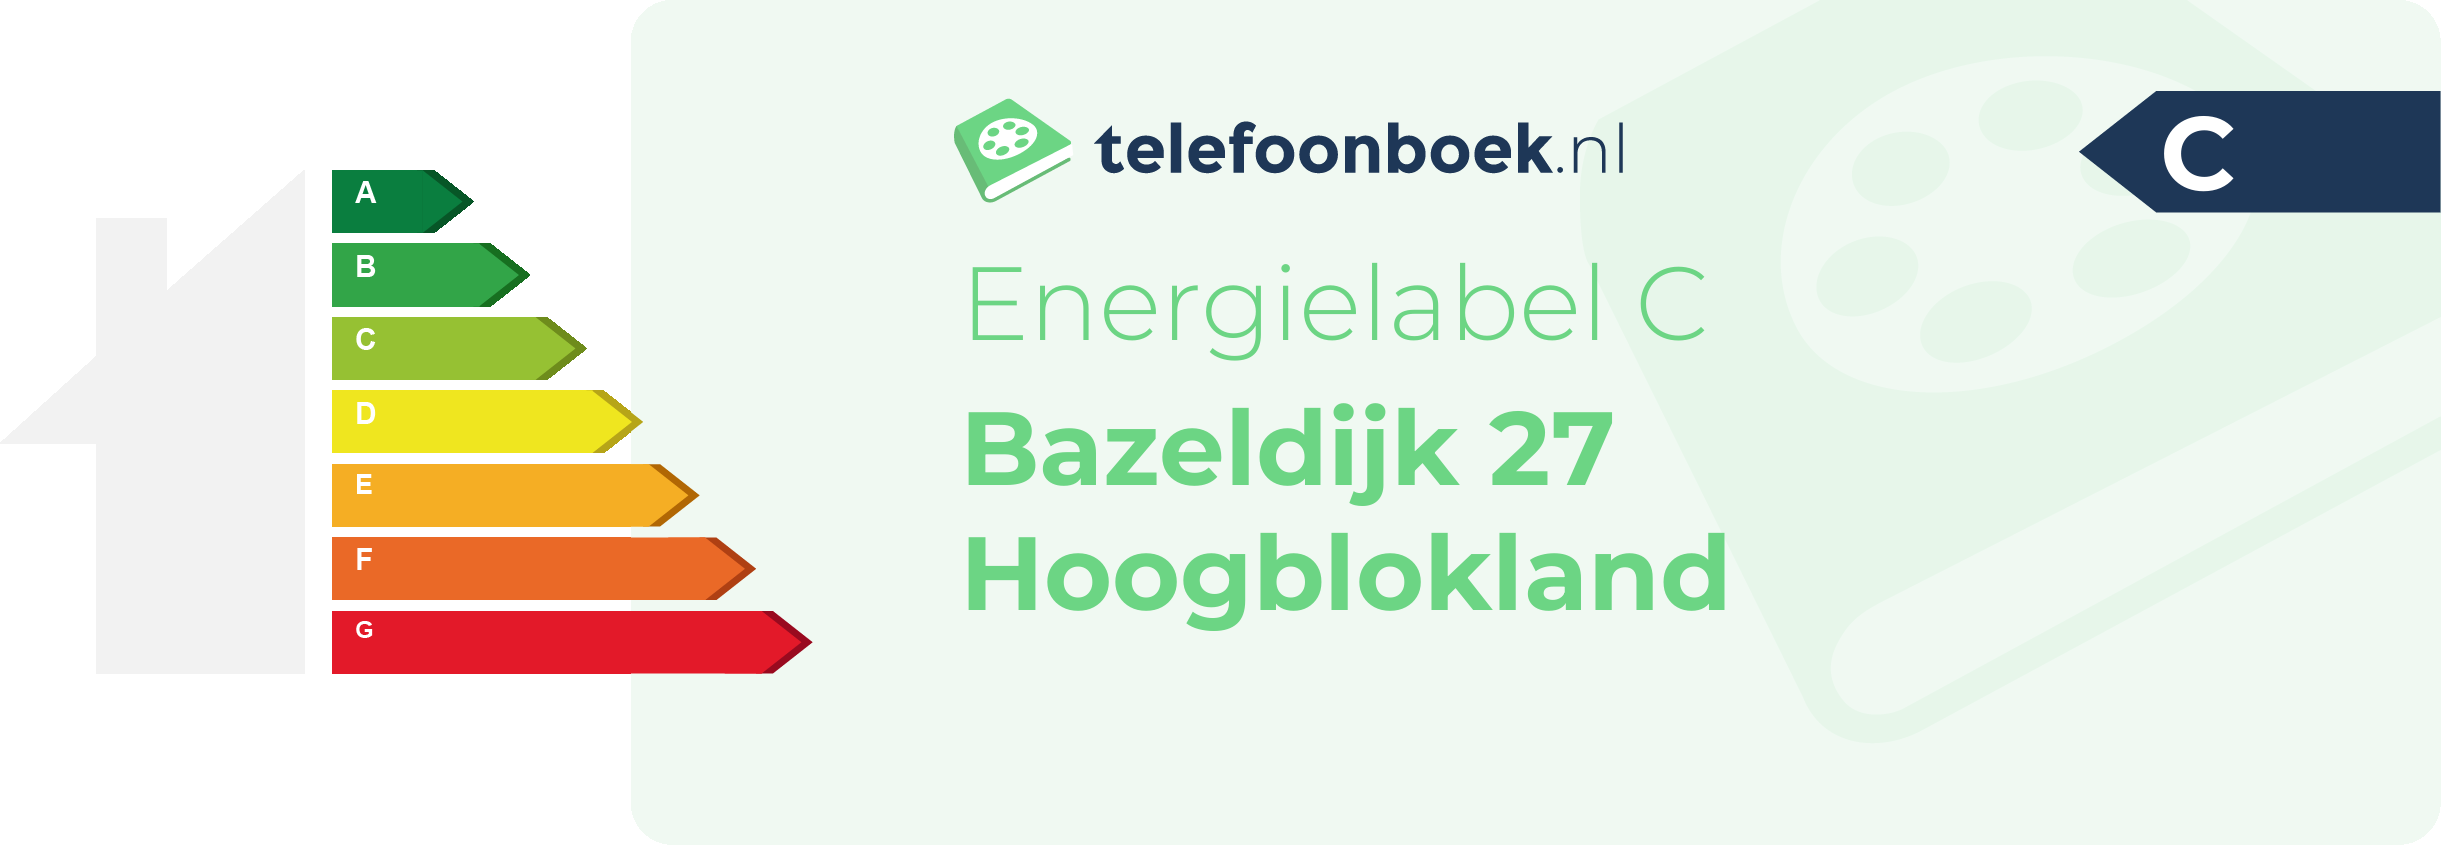 Energielabel Bazeldijk 27 Hoogblokland